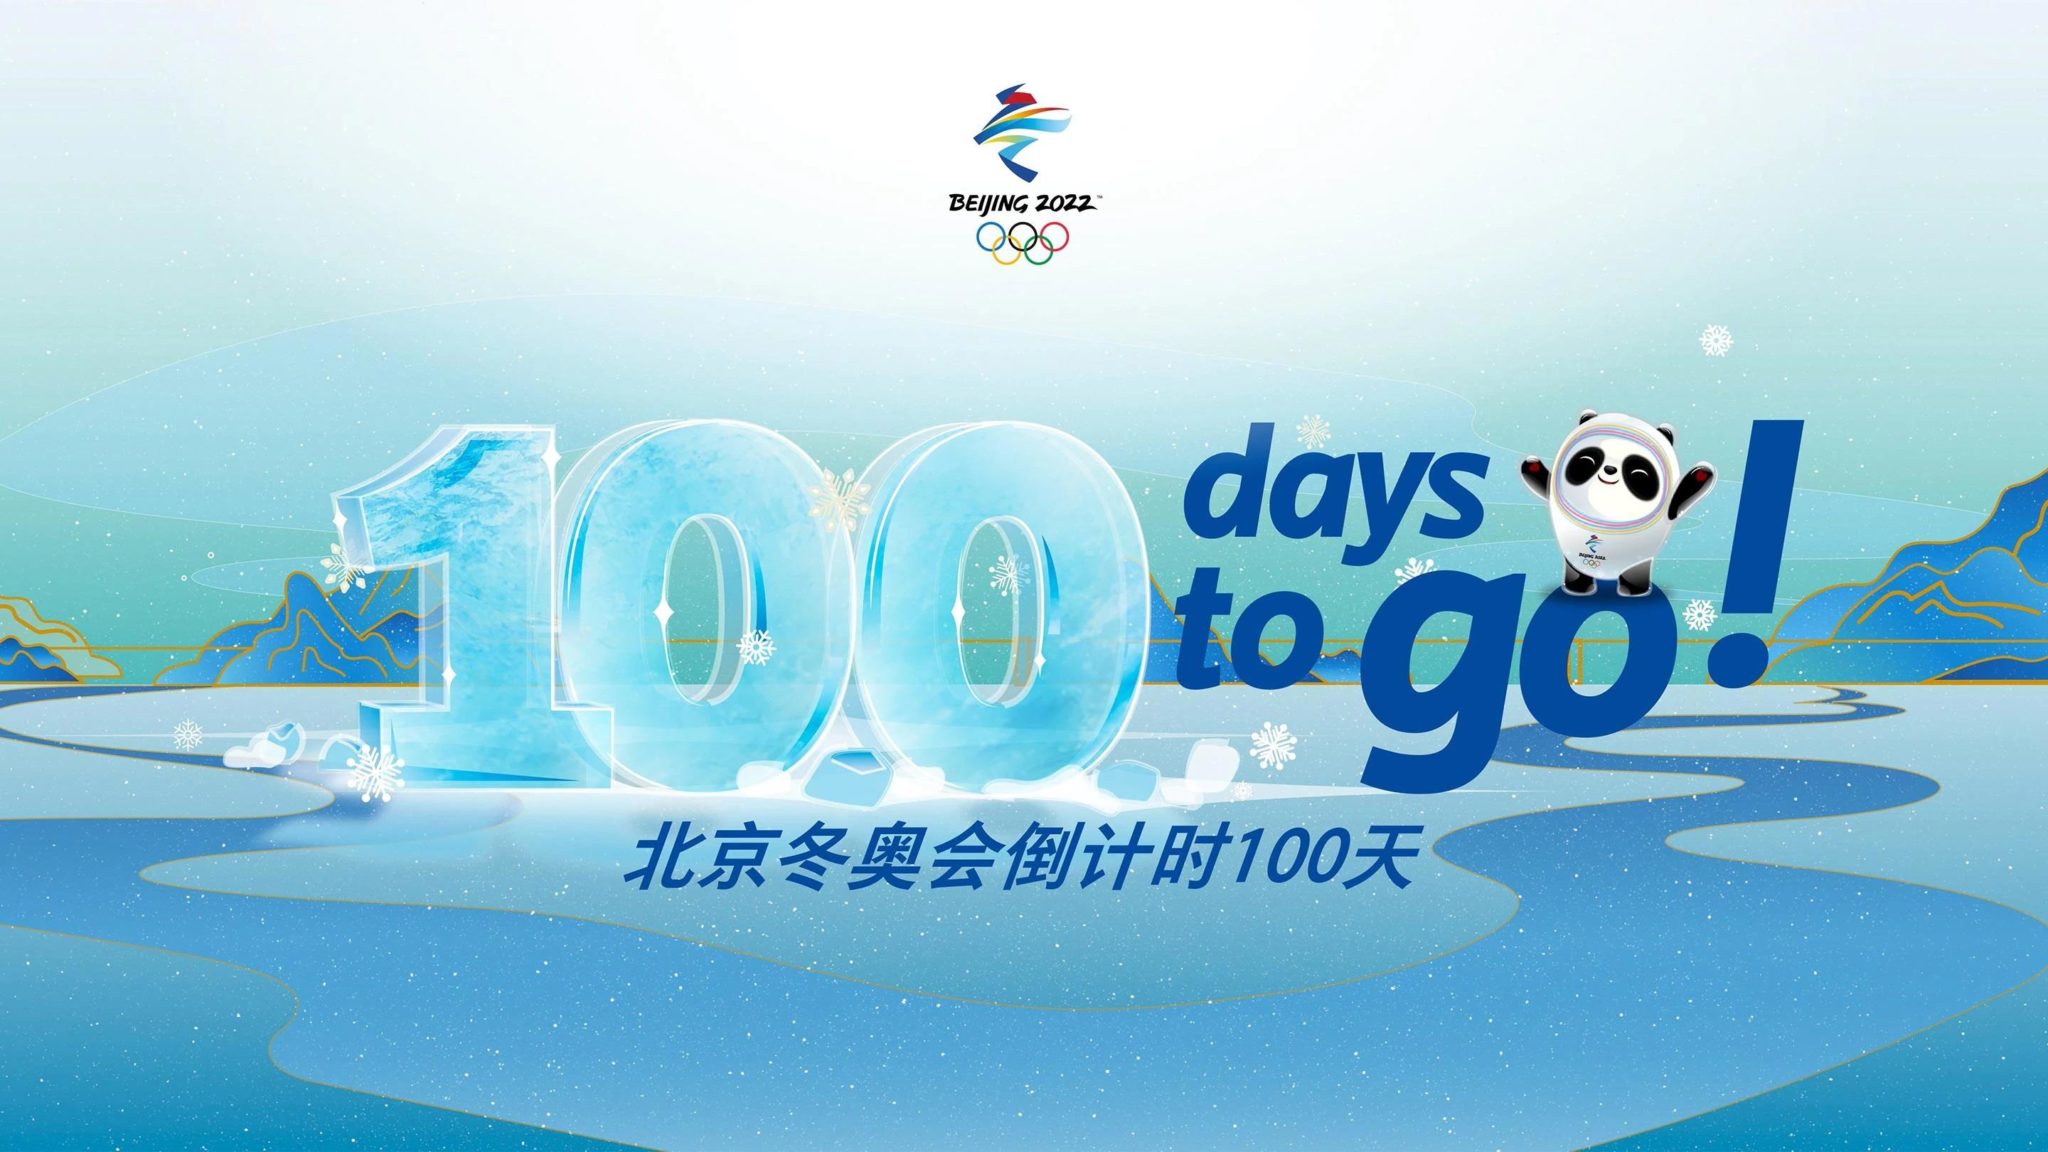 100 days until Beijing 2022